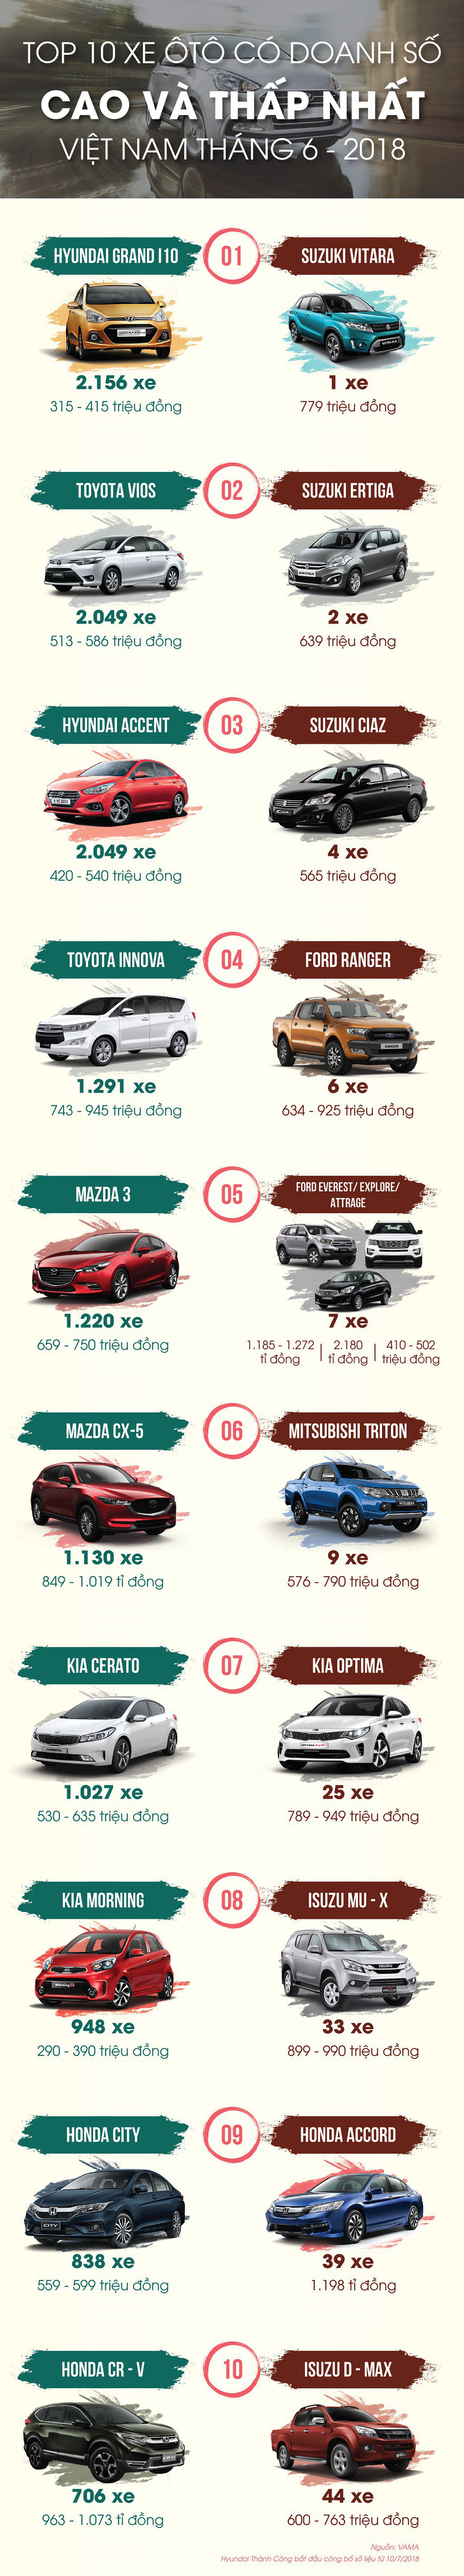 Top 10 xe ôtô có doanh số cao và thấp nhất tại Việt Nam tháng 6-2018 - Ảnh 1.